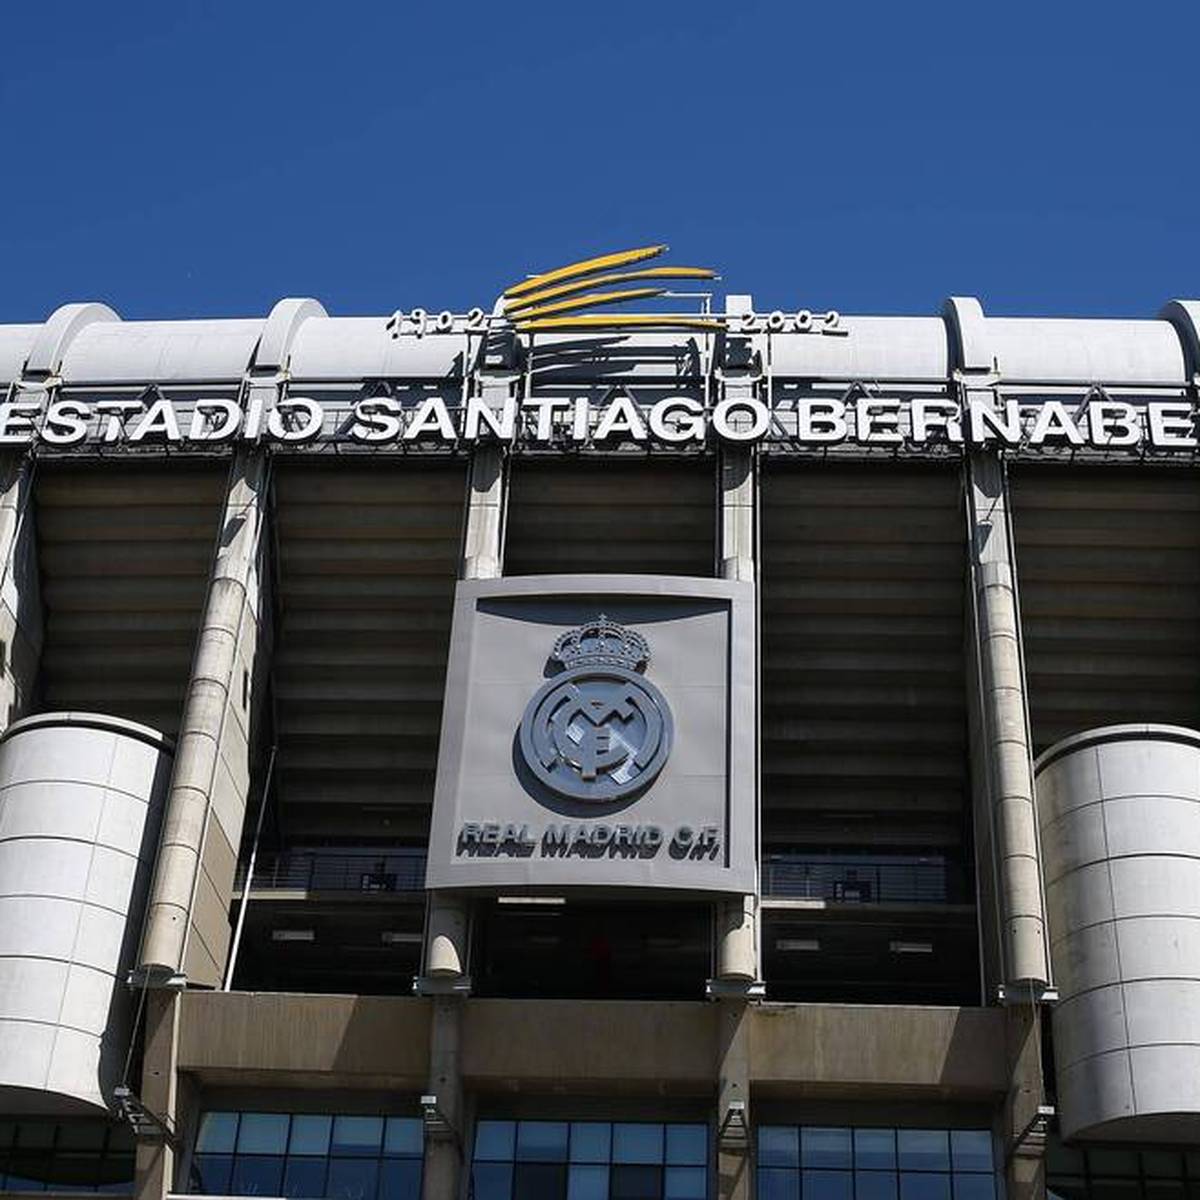 Real Madrid verkündet eine strategische Vereinbarung, die den Umbau des Stadions Santiago Bernabéu betrifft. Der Deal umfasst zwei Kooperationen und einen hohen Geldbetrag.